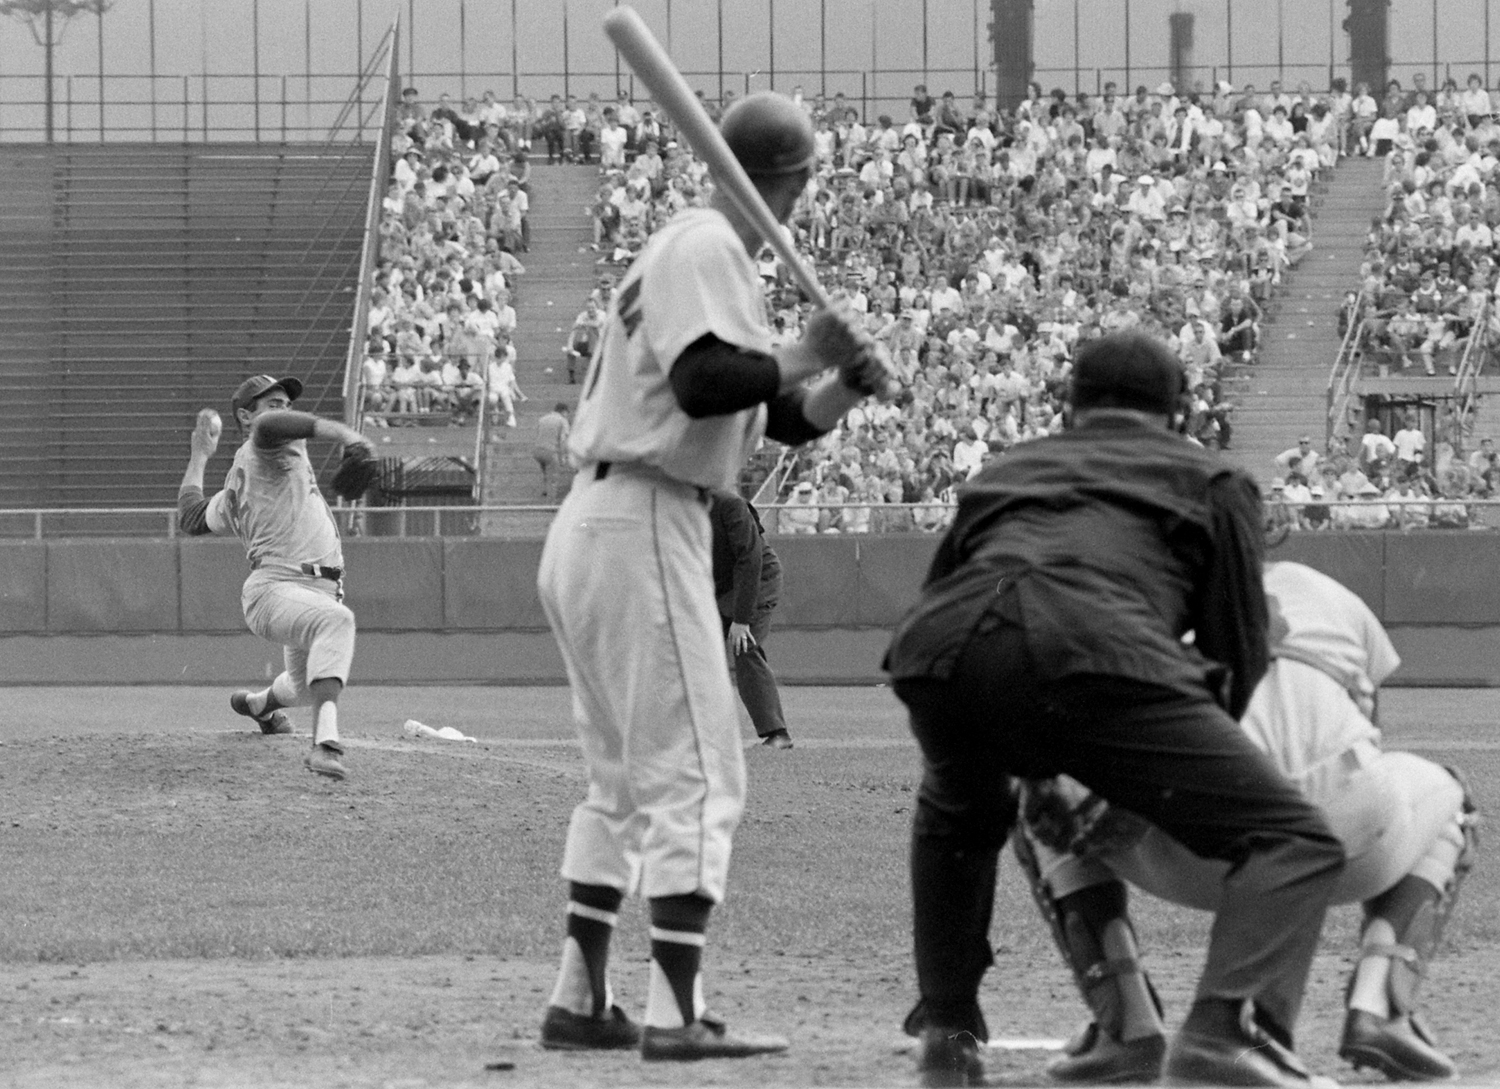 Sandy Koufax pitching, 1963.